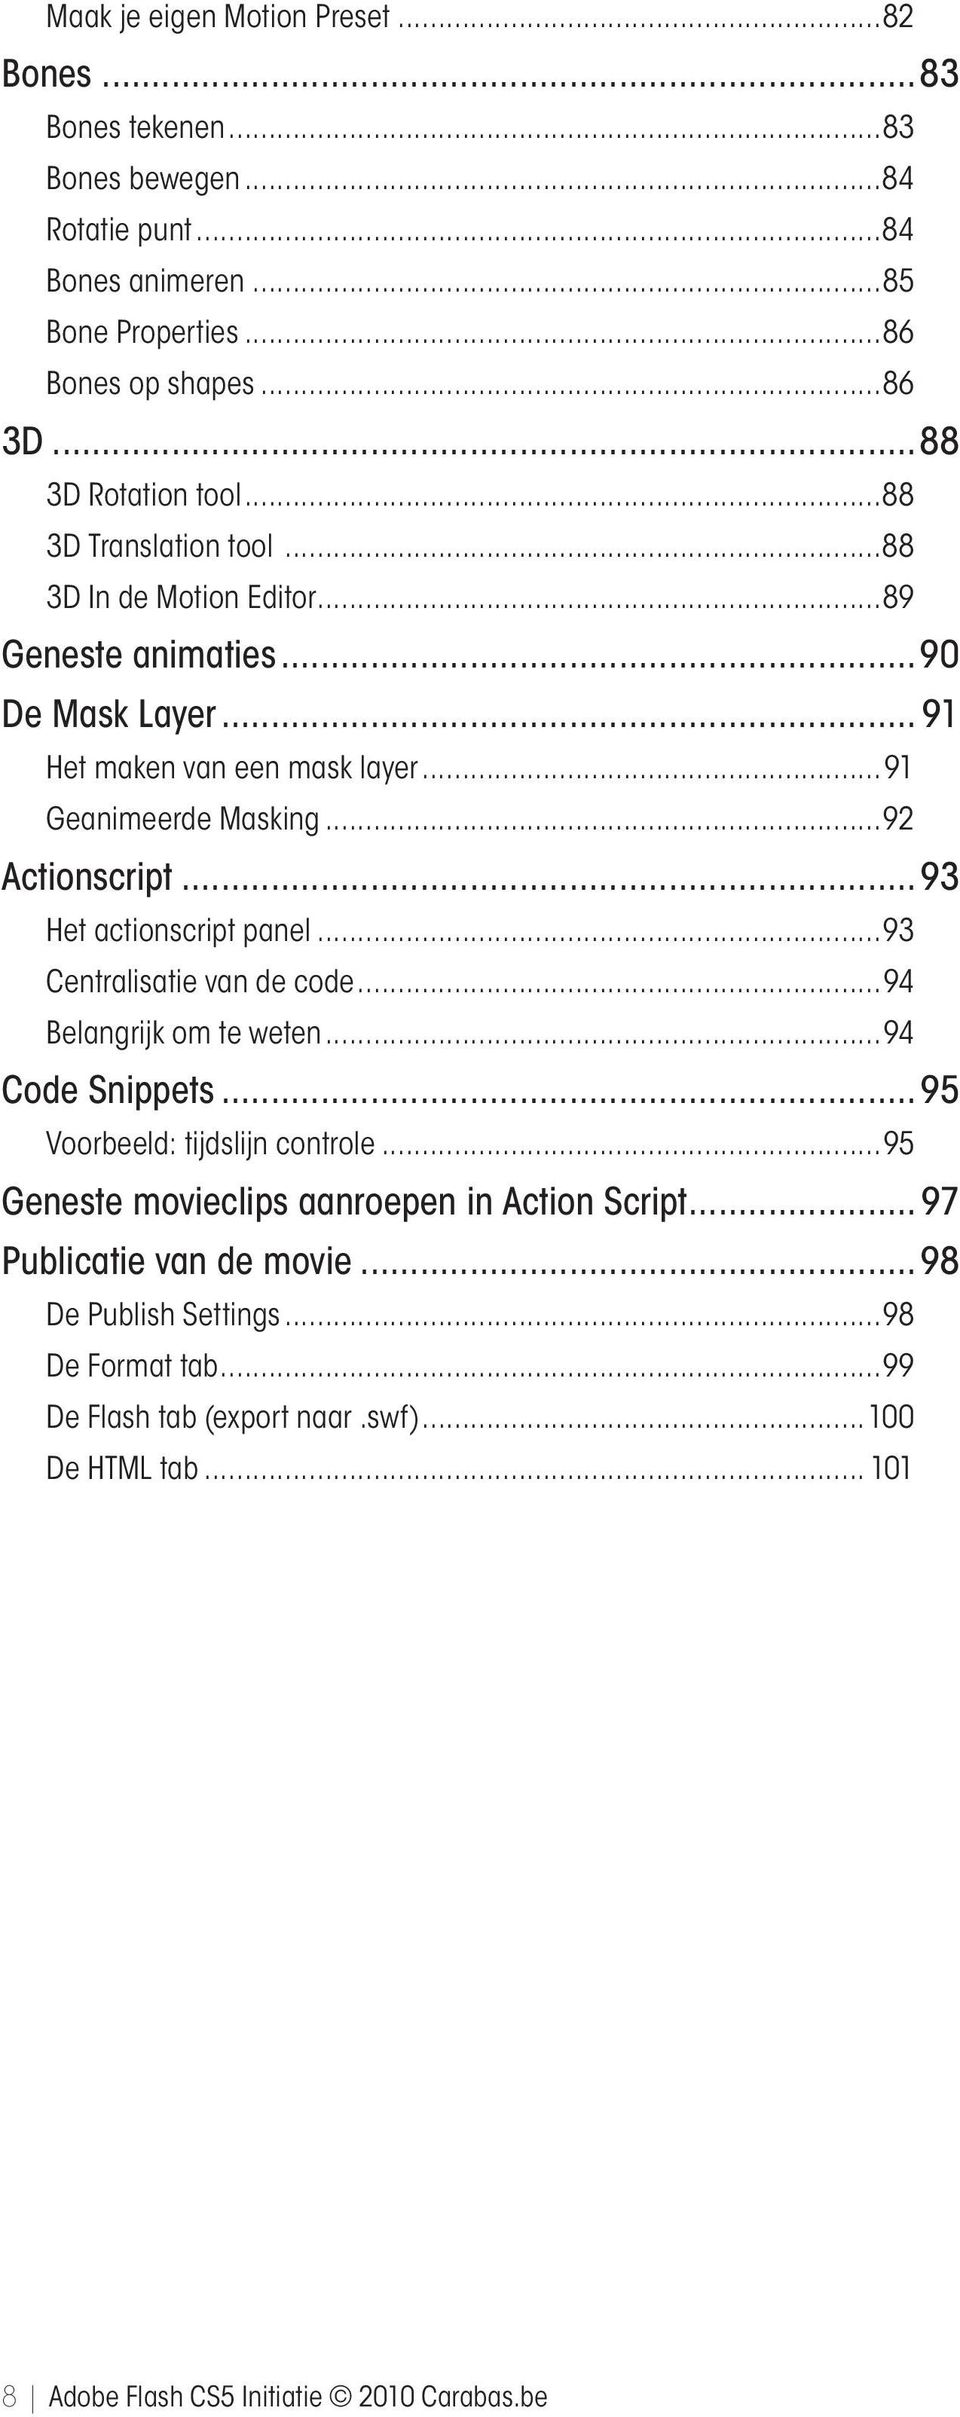 ..92 Actionscript 93 Het actionscript panel...93 Centralisatie van de code...94 Belangrijk om te weten...94 Code Snippets 95 Voorbeeld: tijdslijn controle.